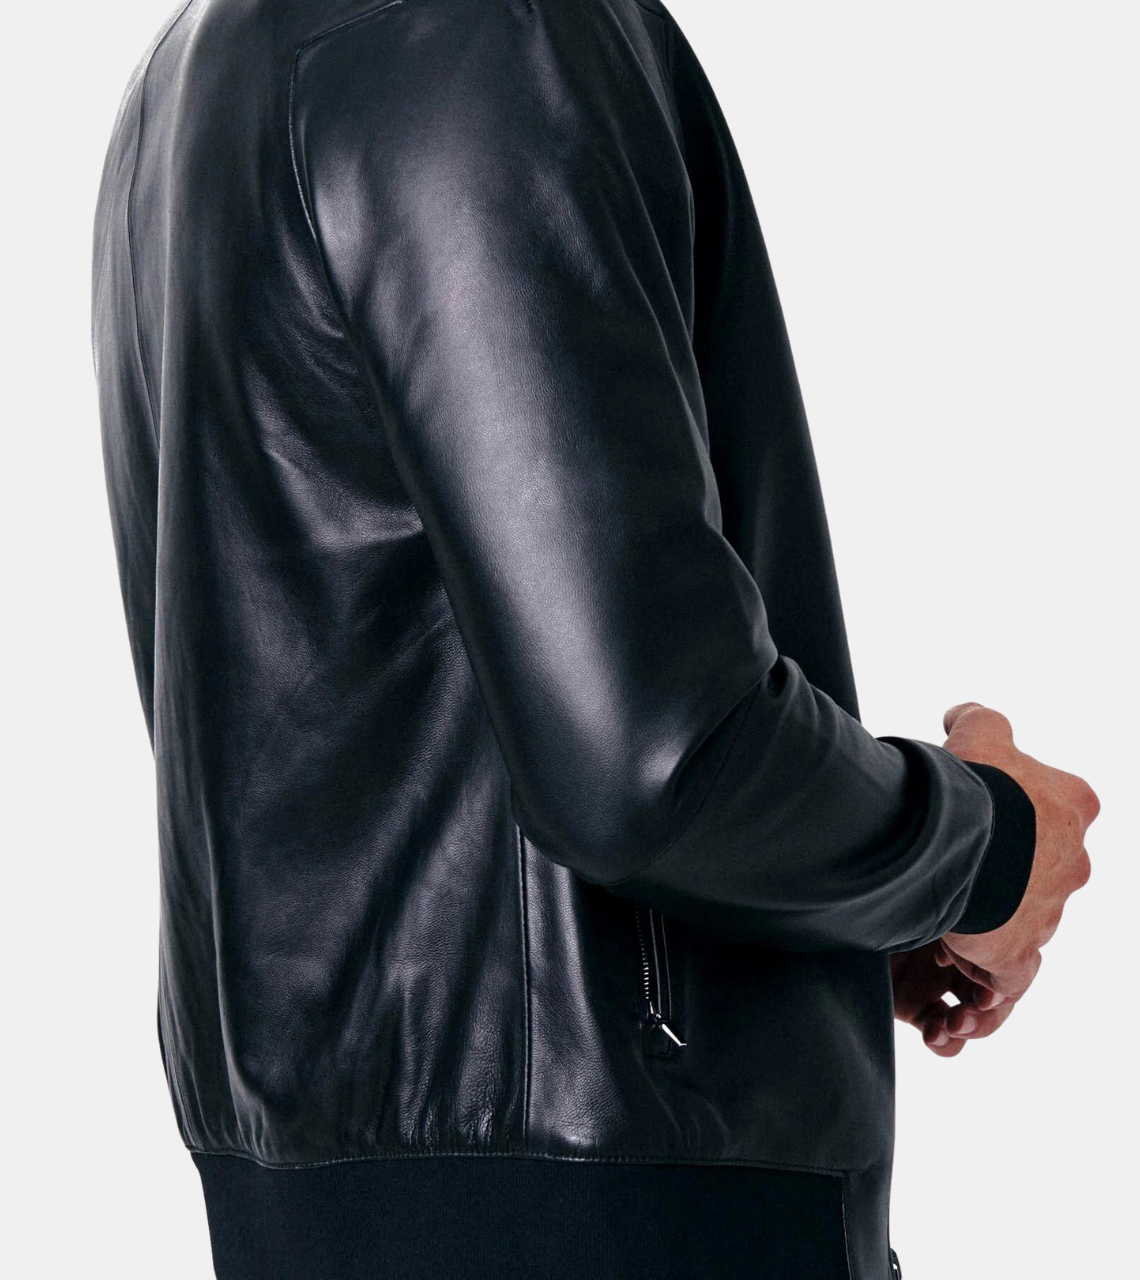 Clifer Black Bomber Leather Jacket For Men's